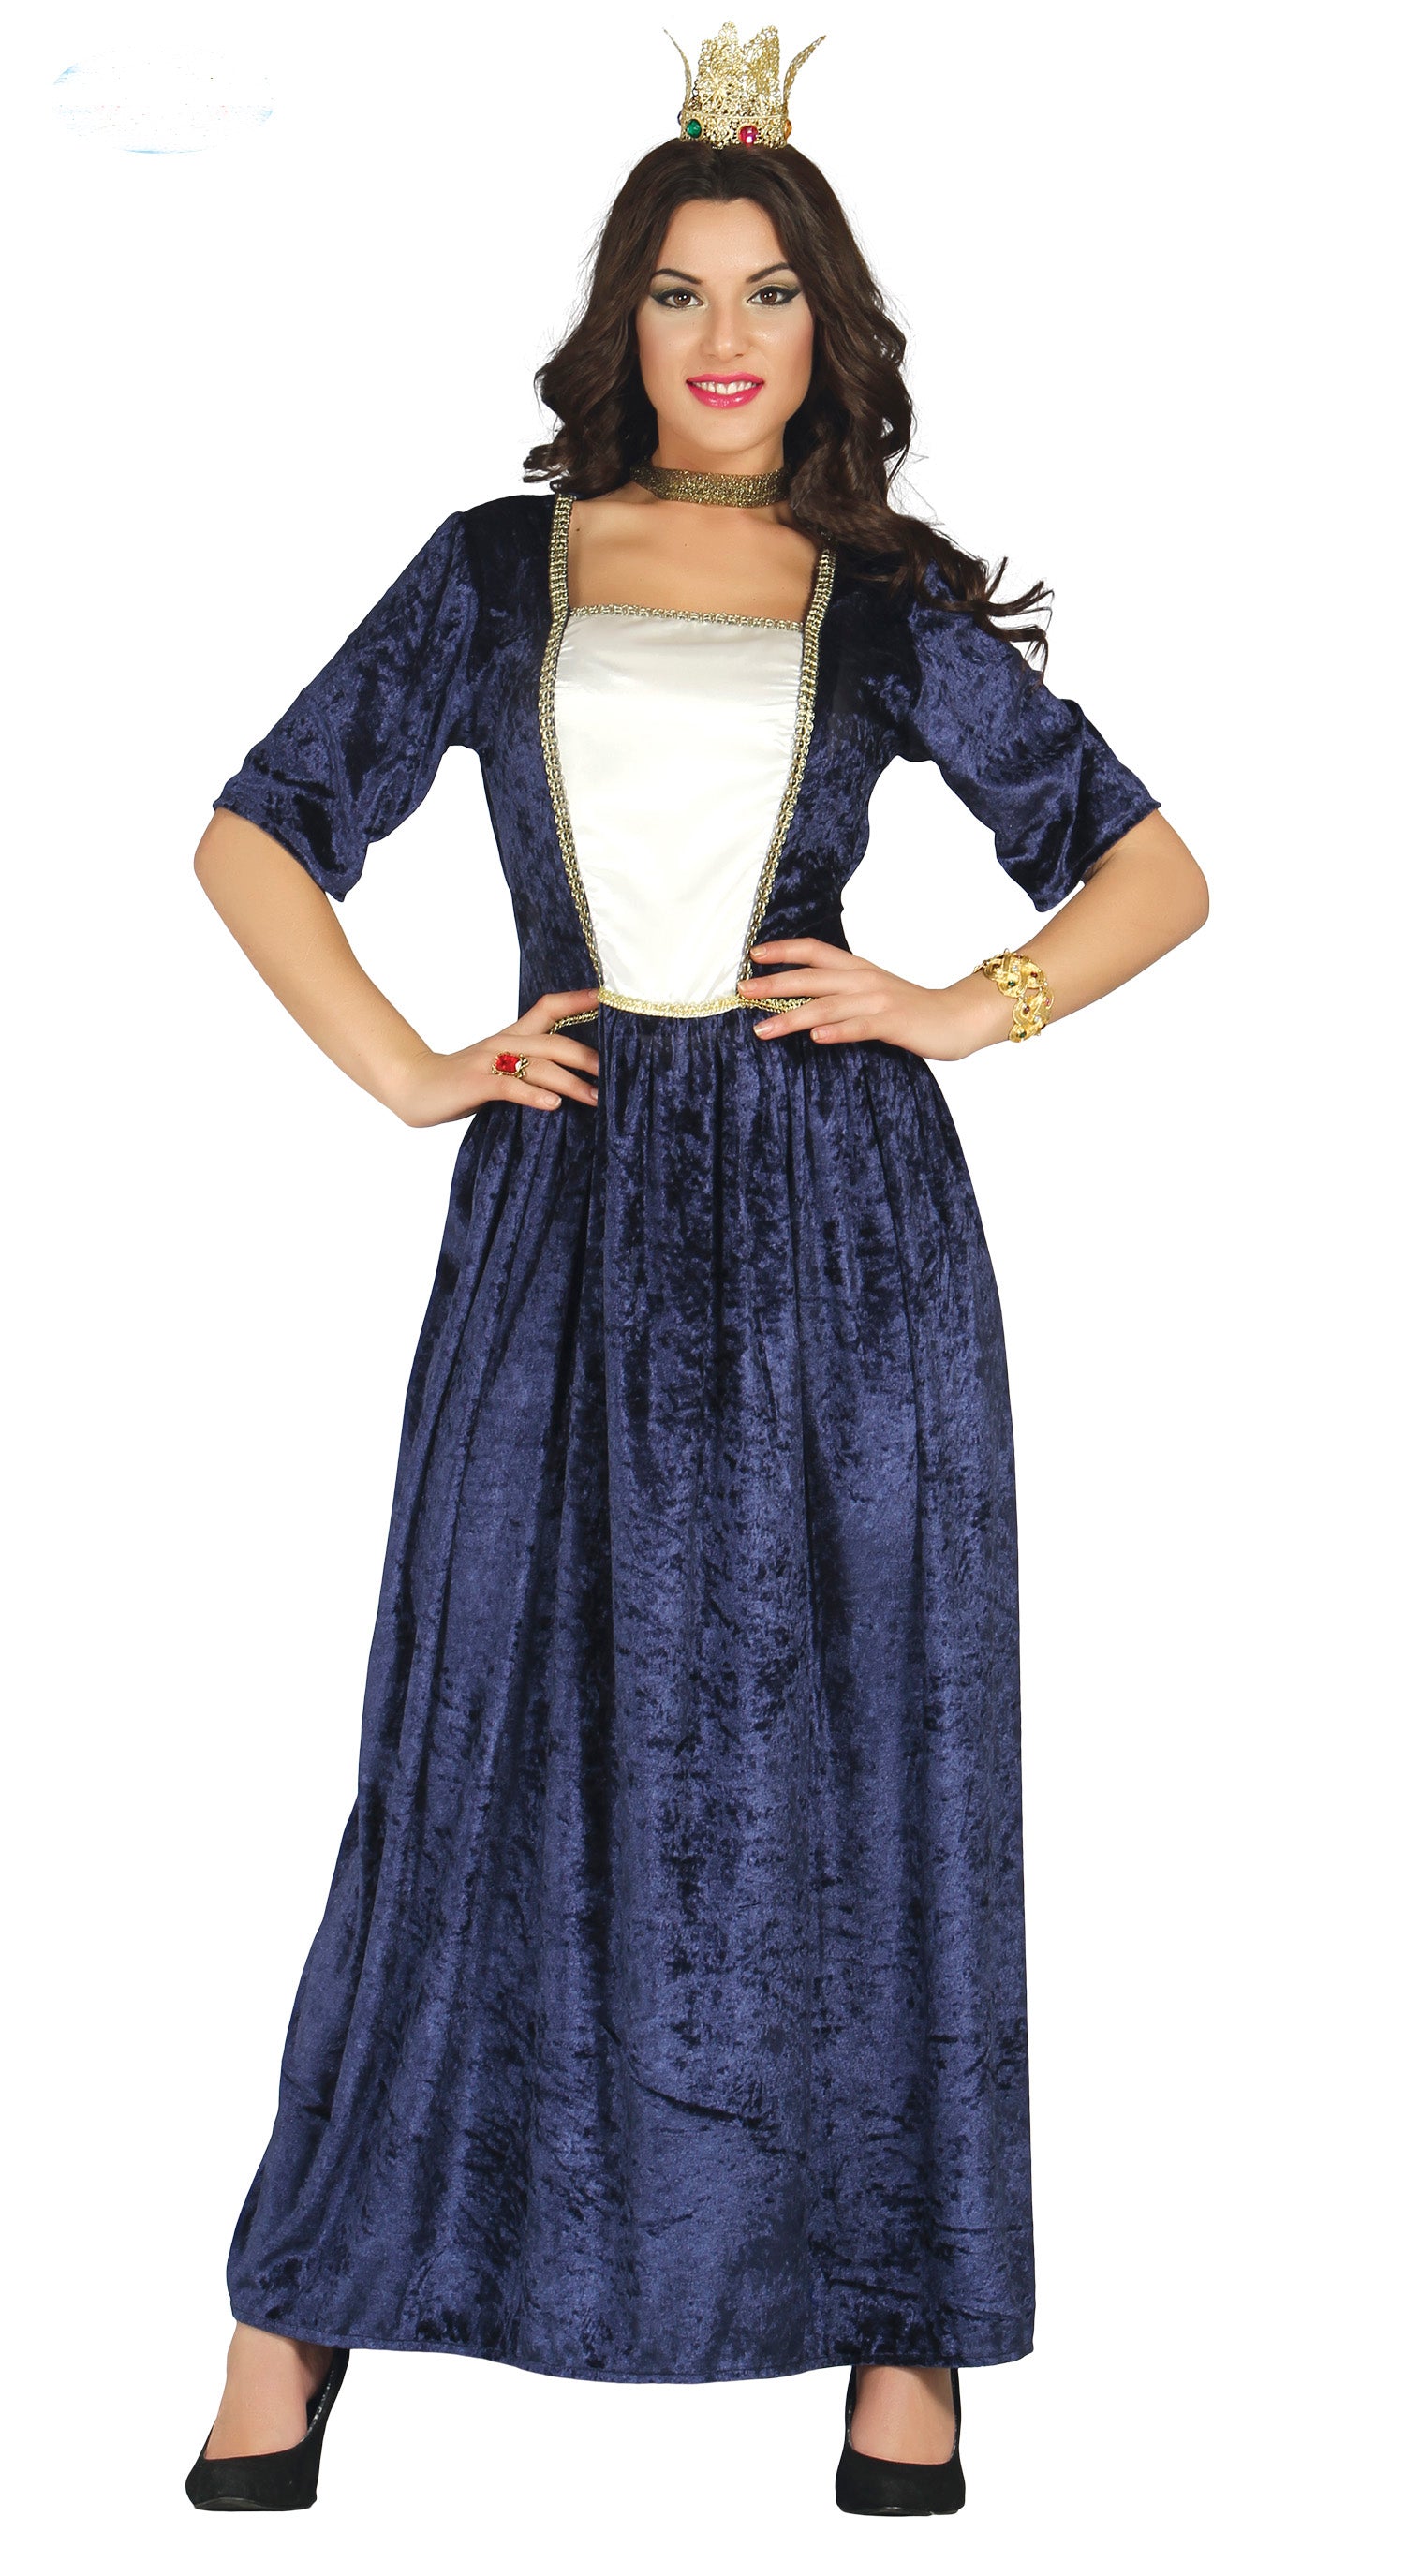 Blue Renaissance Maiden ladies fancy dress costume